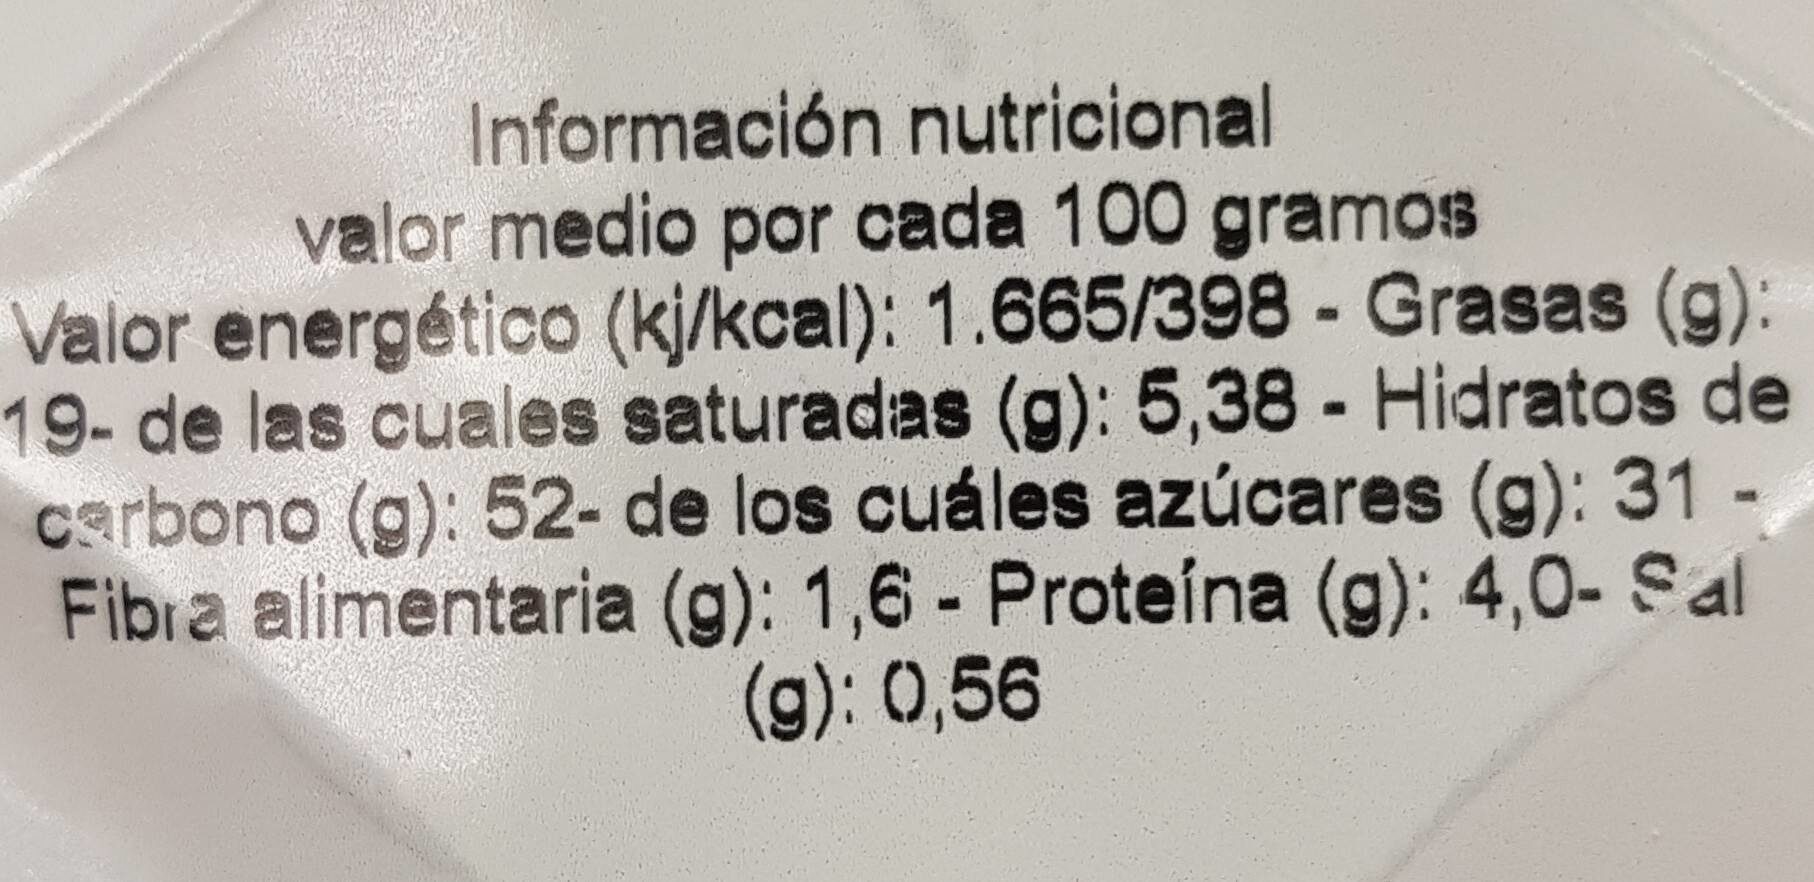 Rosquilla frita - Información nutricional